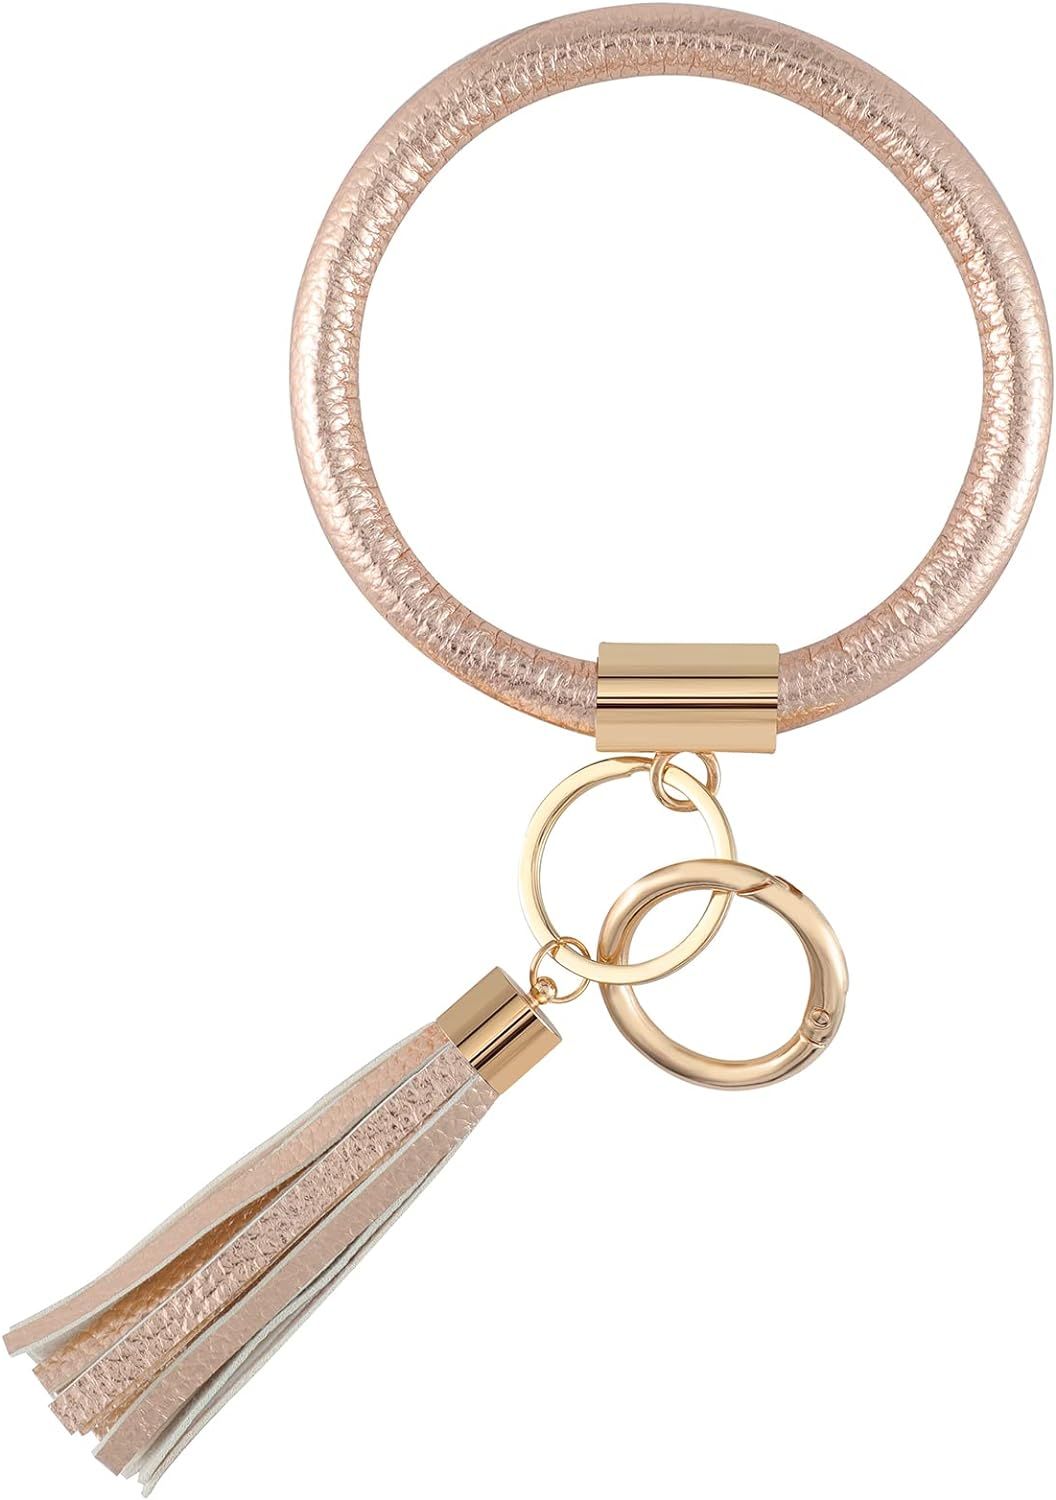 Weixiltc Key Ring Bracelet Wristlet Keychain Bangle Keyring - Portable Leather Tassel Bracelet Ke... | Amazon (US)